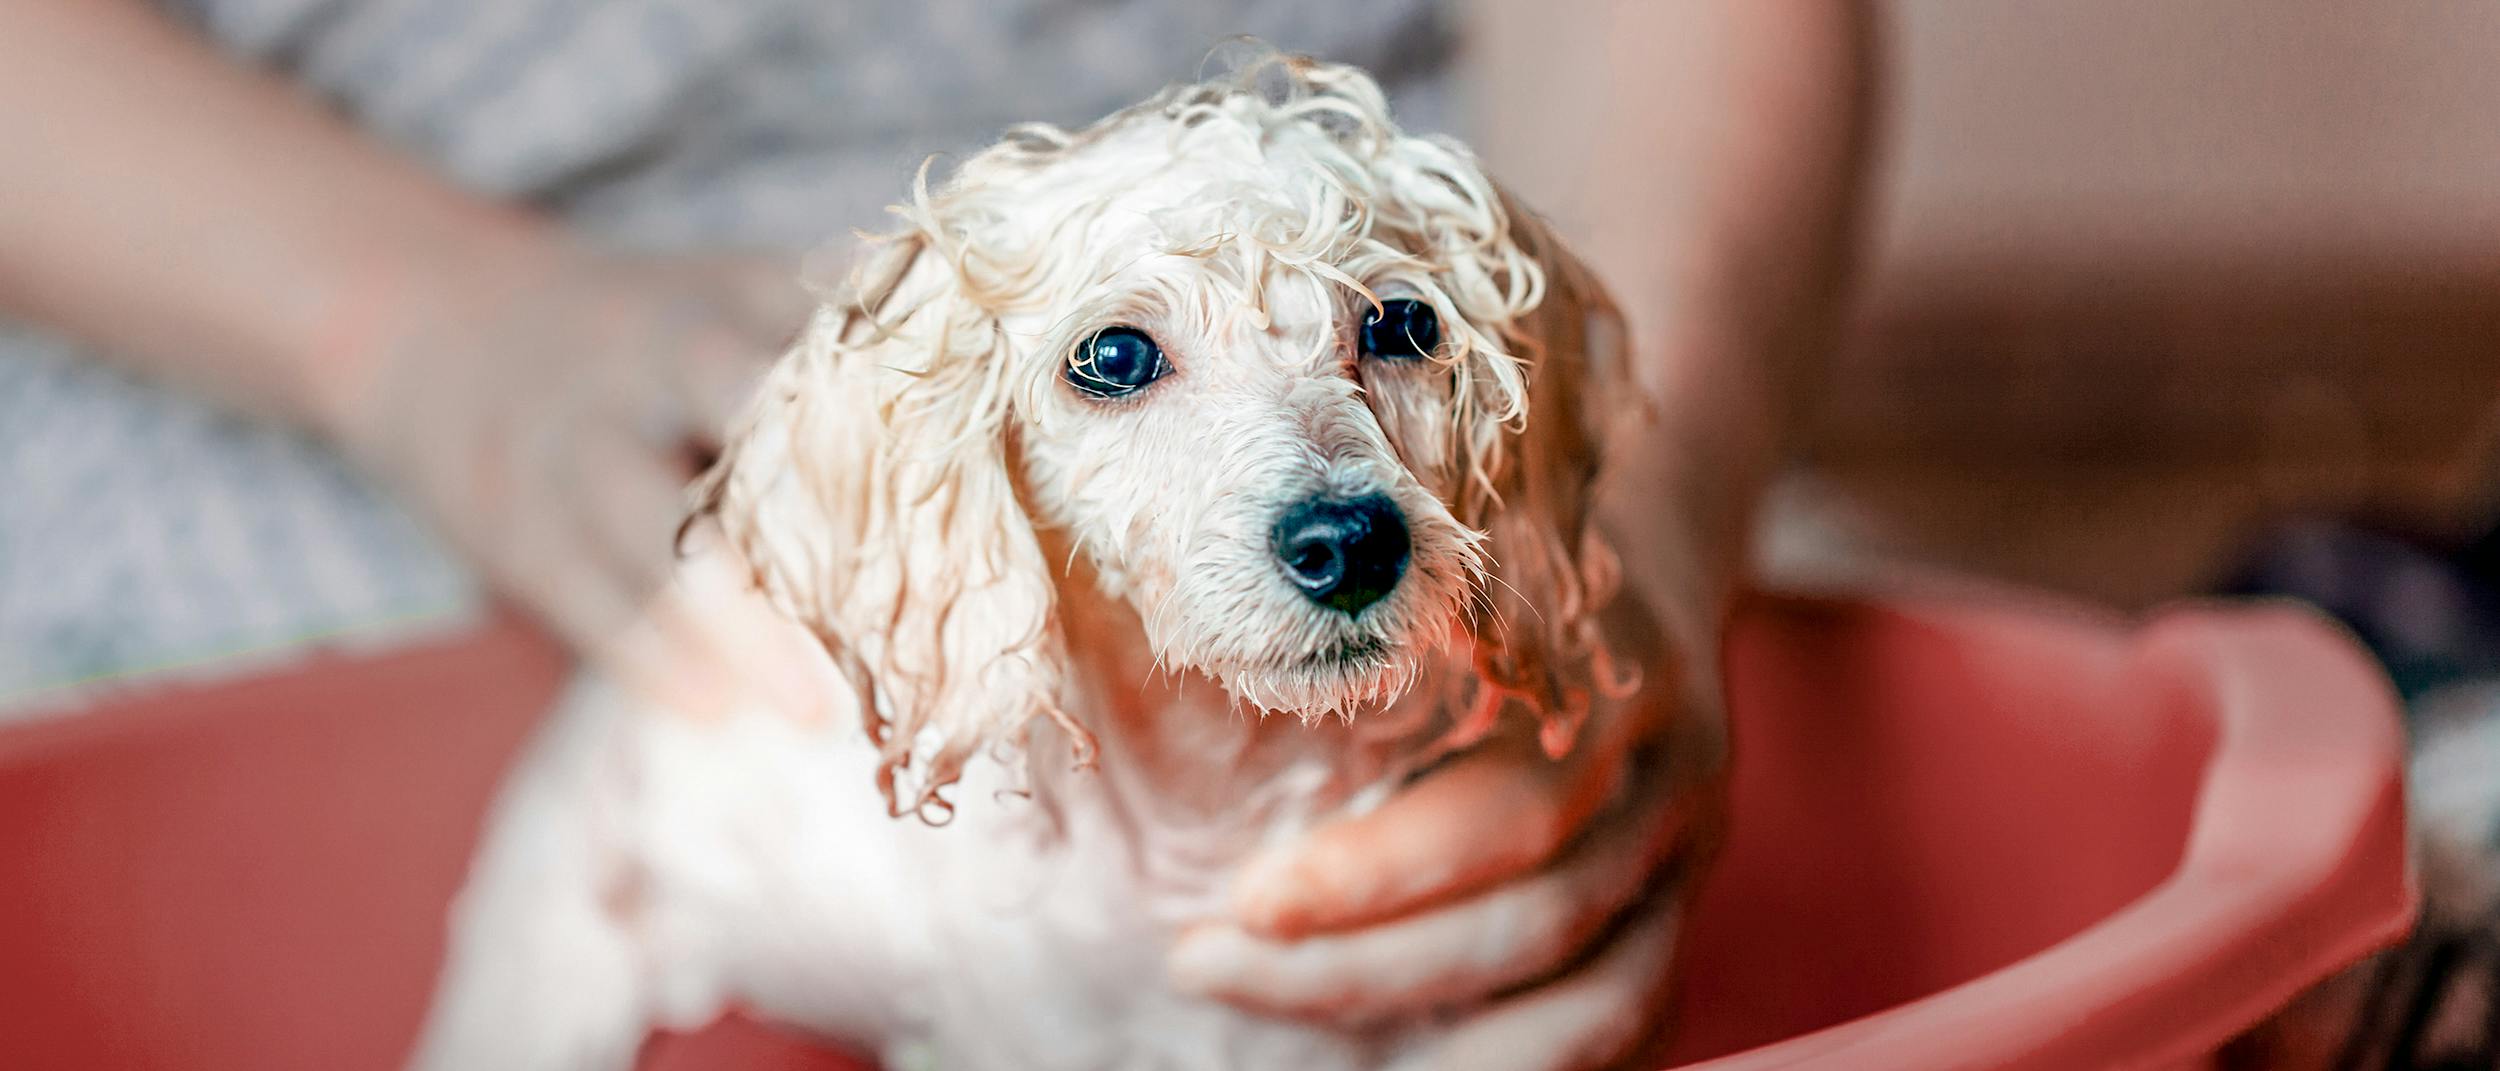 Higiene y limpieza Perro – Pets Online